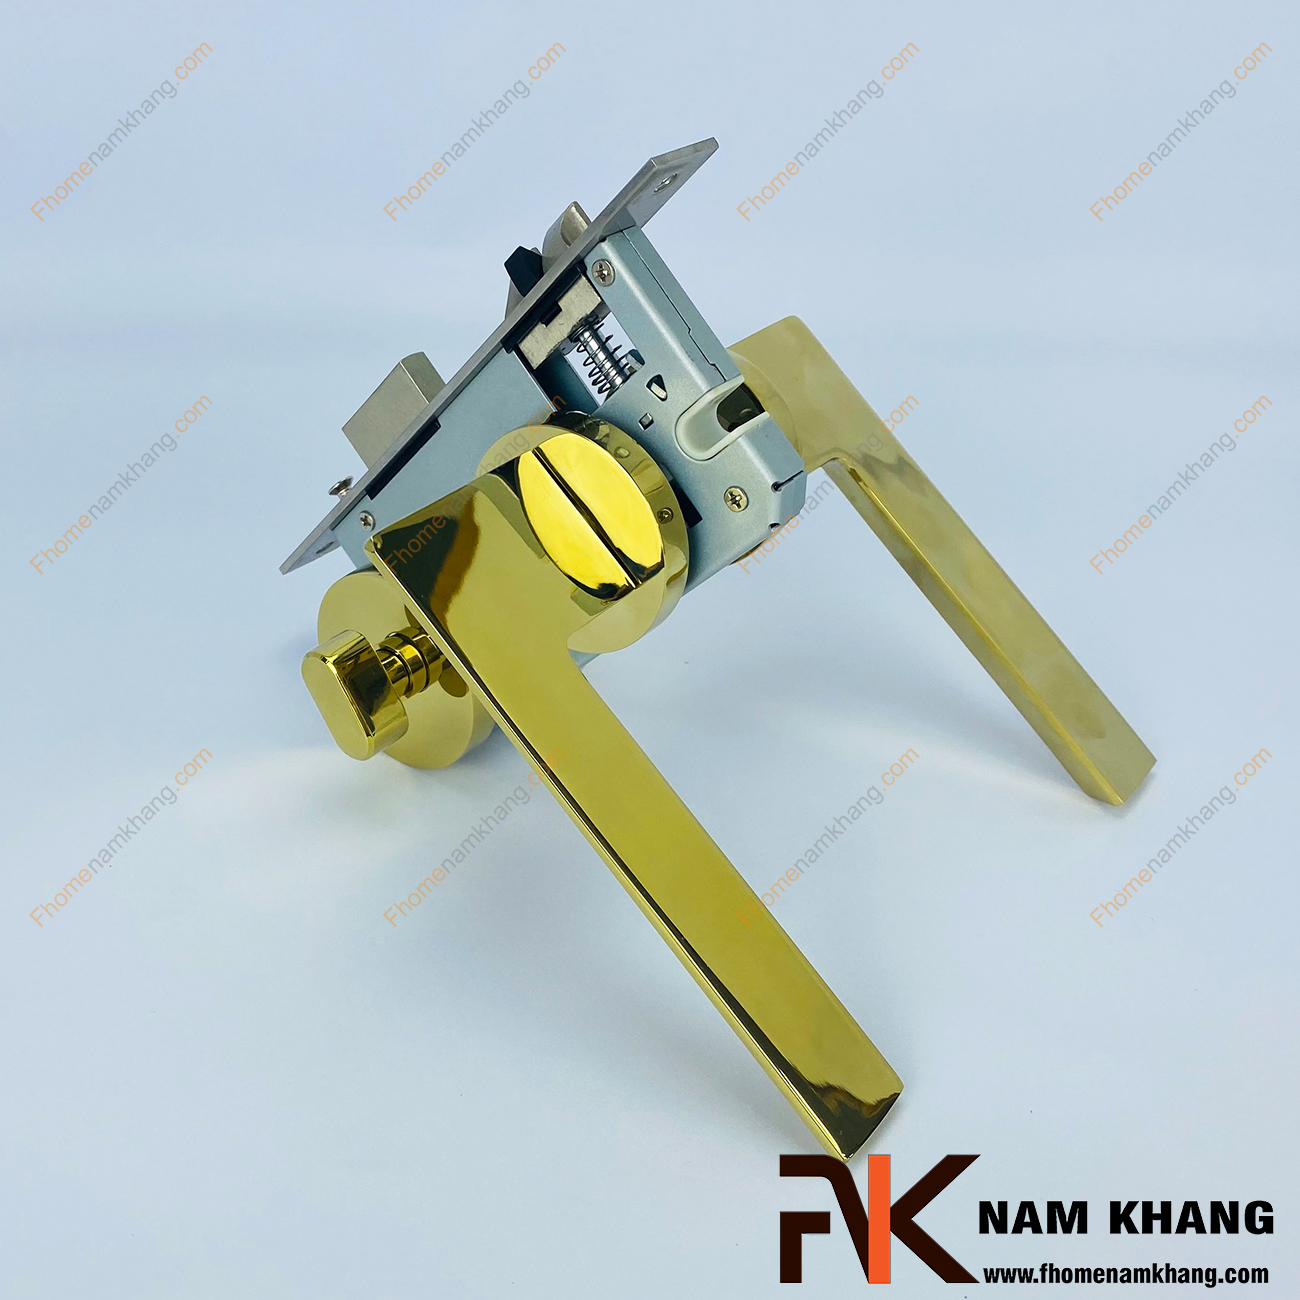 Khóa cửa phân thể bằng inox màu vàng bóng NK478M-V có thiết kế phần ốp khóa và tay gạt riêng biệt, khá nhỏ gọn và tạo được sự nổi bật độc đáo của một dòng khóa cửa.